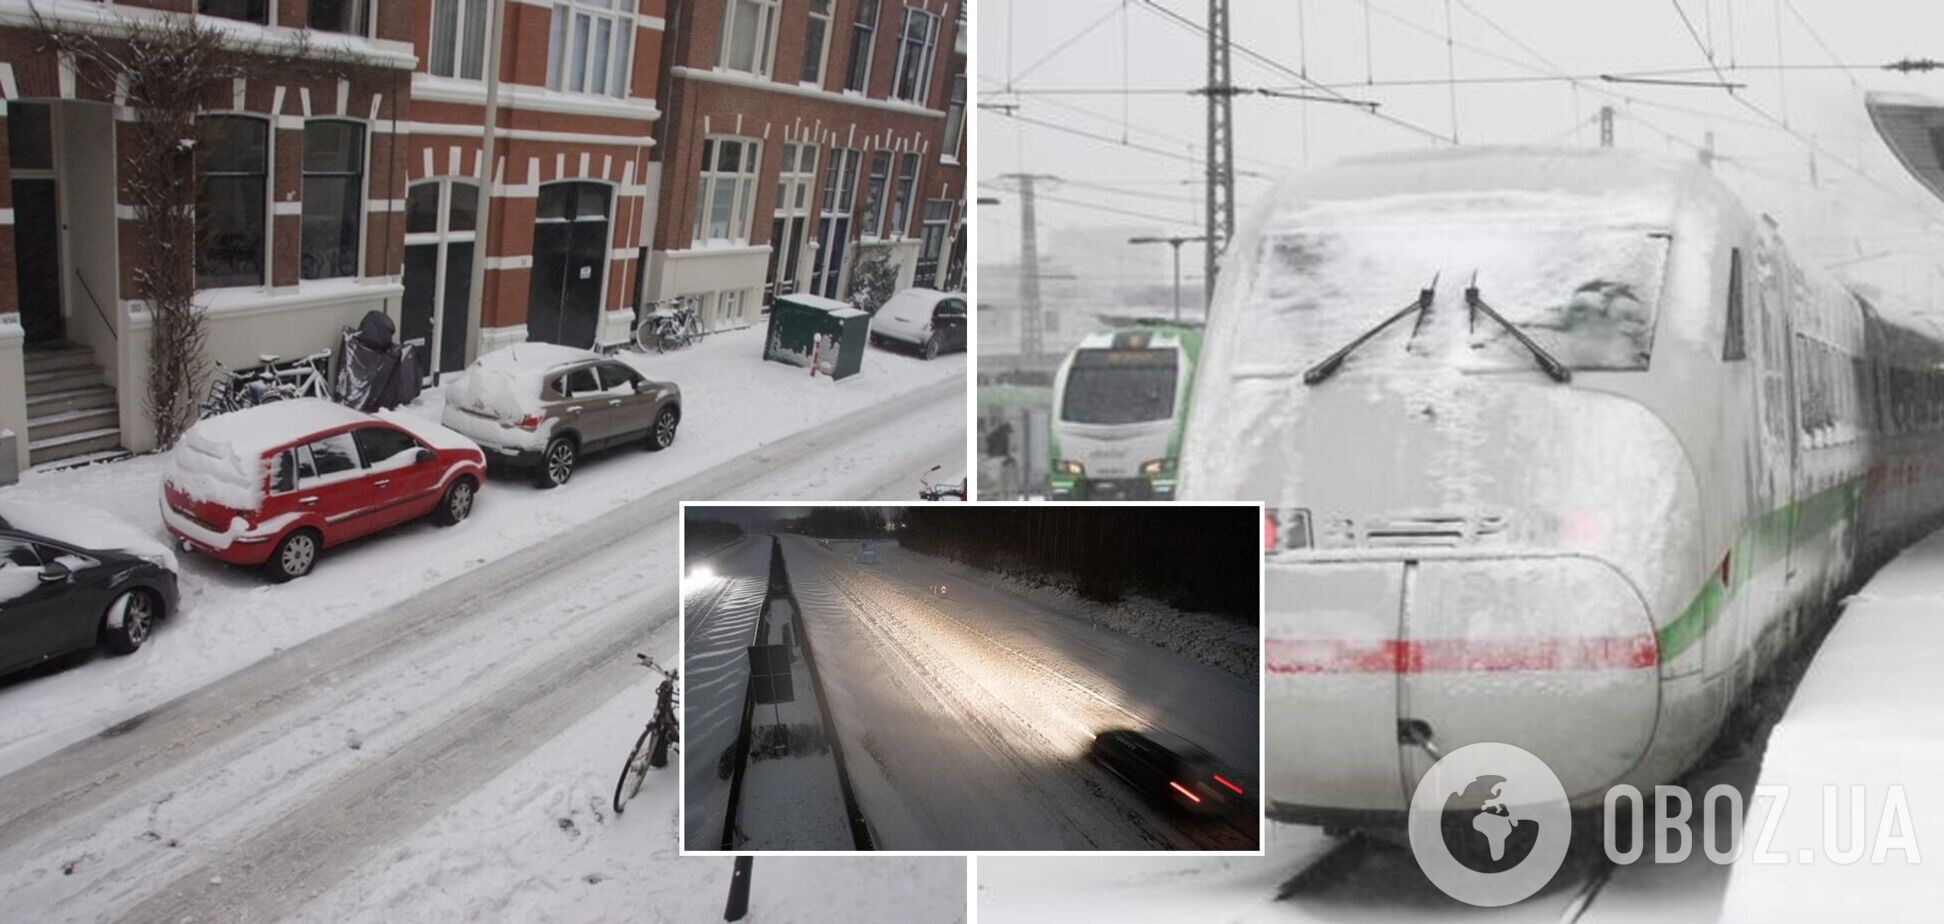 Европу засыпало снегом: парализованы аэропорты и железная дорога. Фото